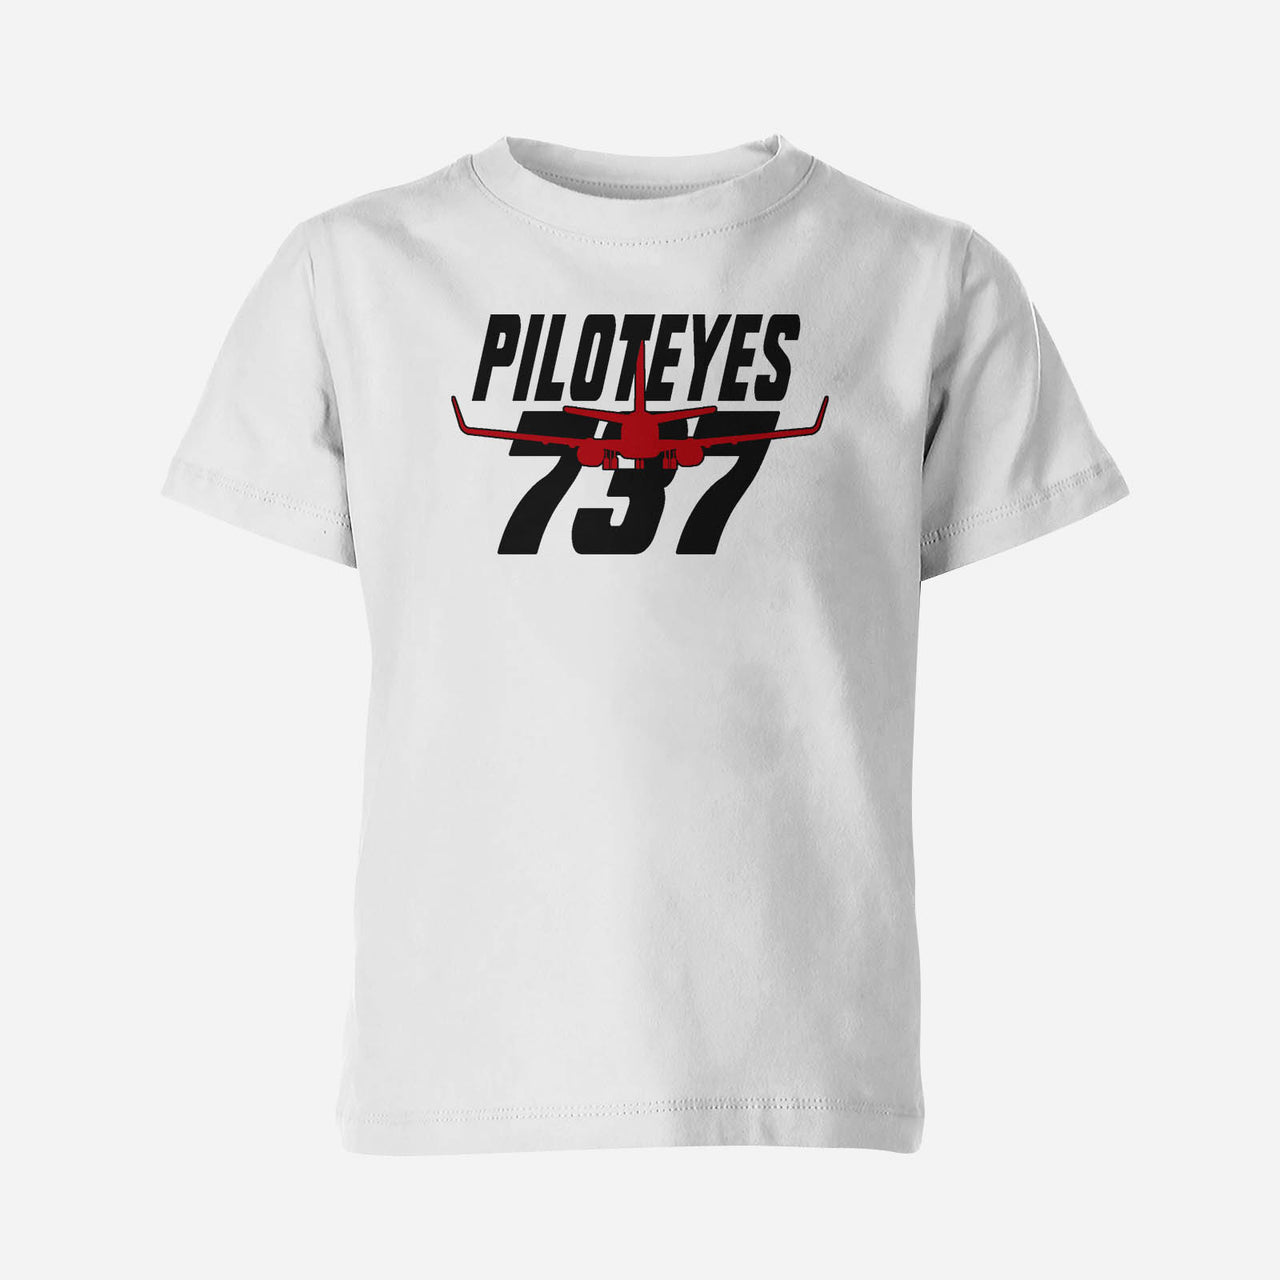 Amazing Piloteyes737 Designed Children T-Shirts